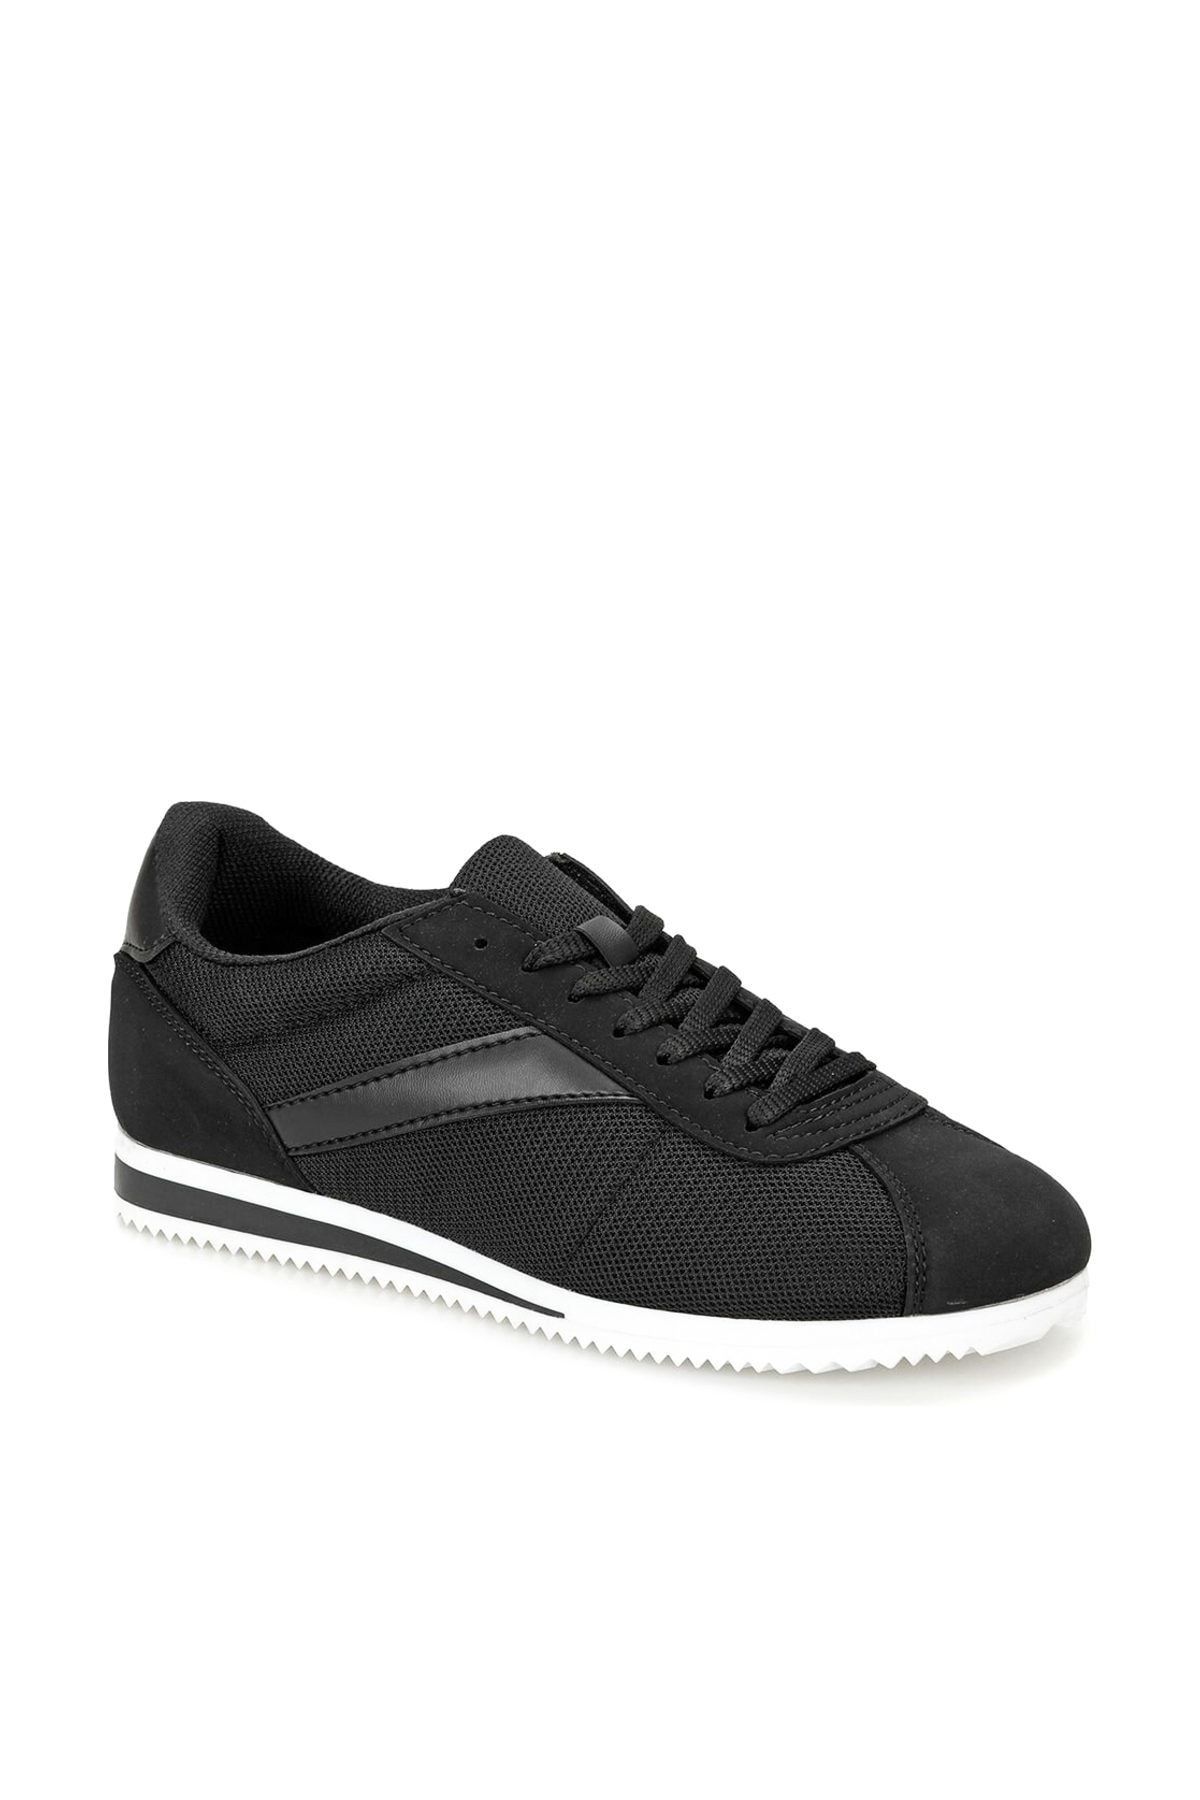 Torex ZEUS MESH Siyah Beyaz Erkek Sneaker 100318080